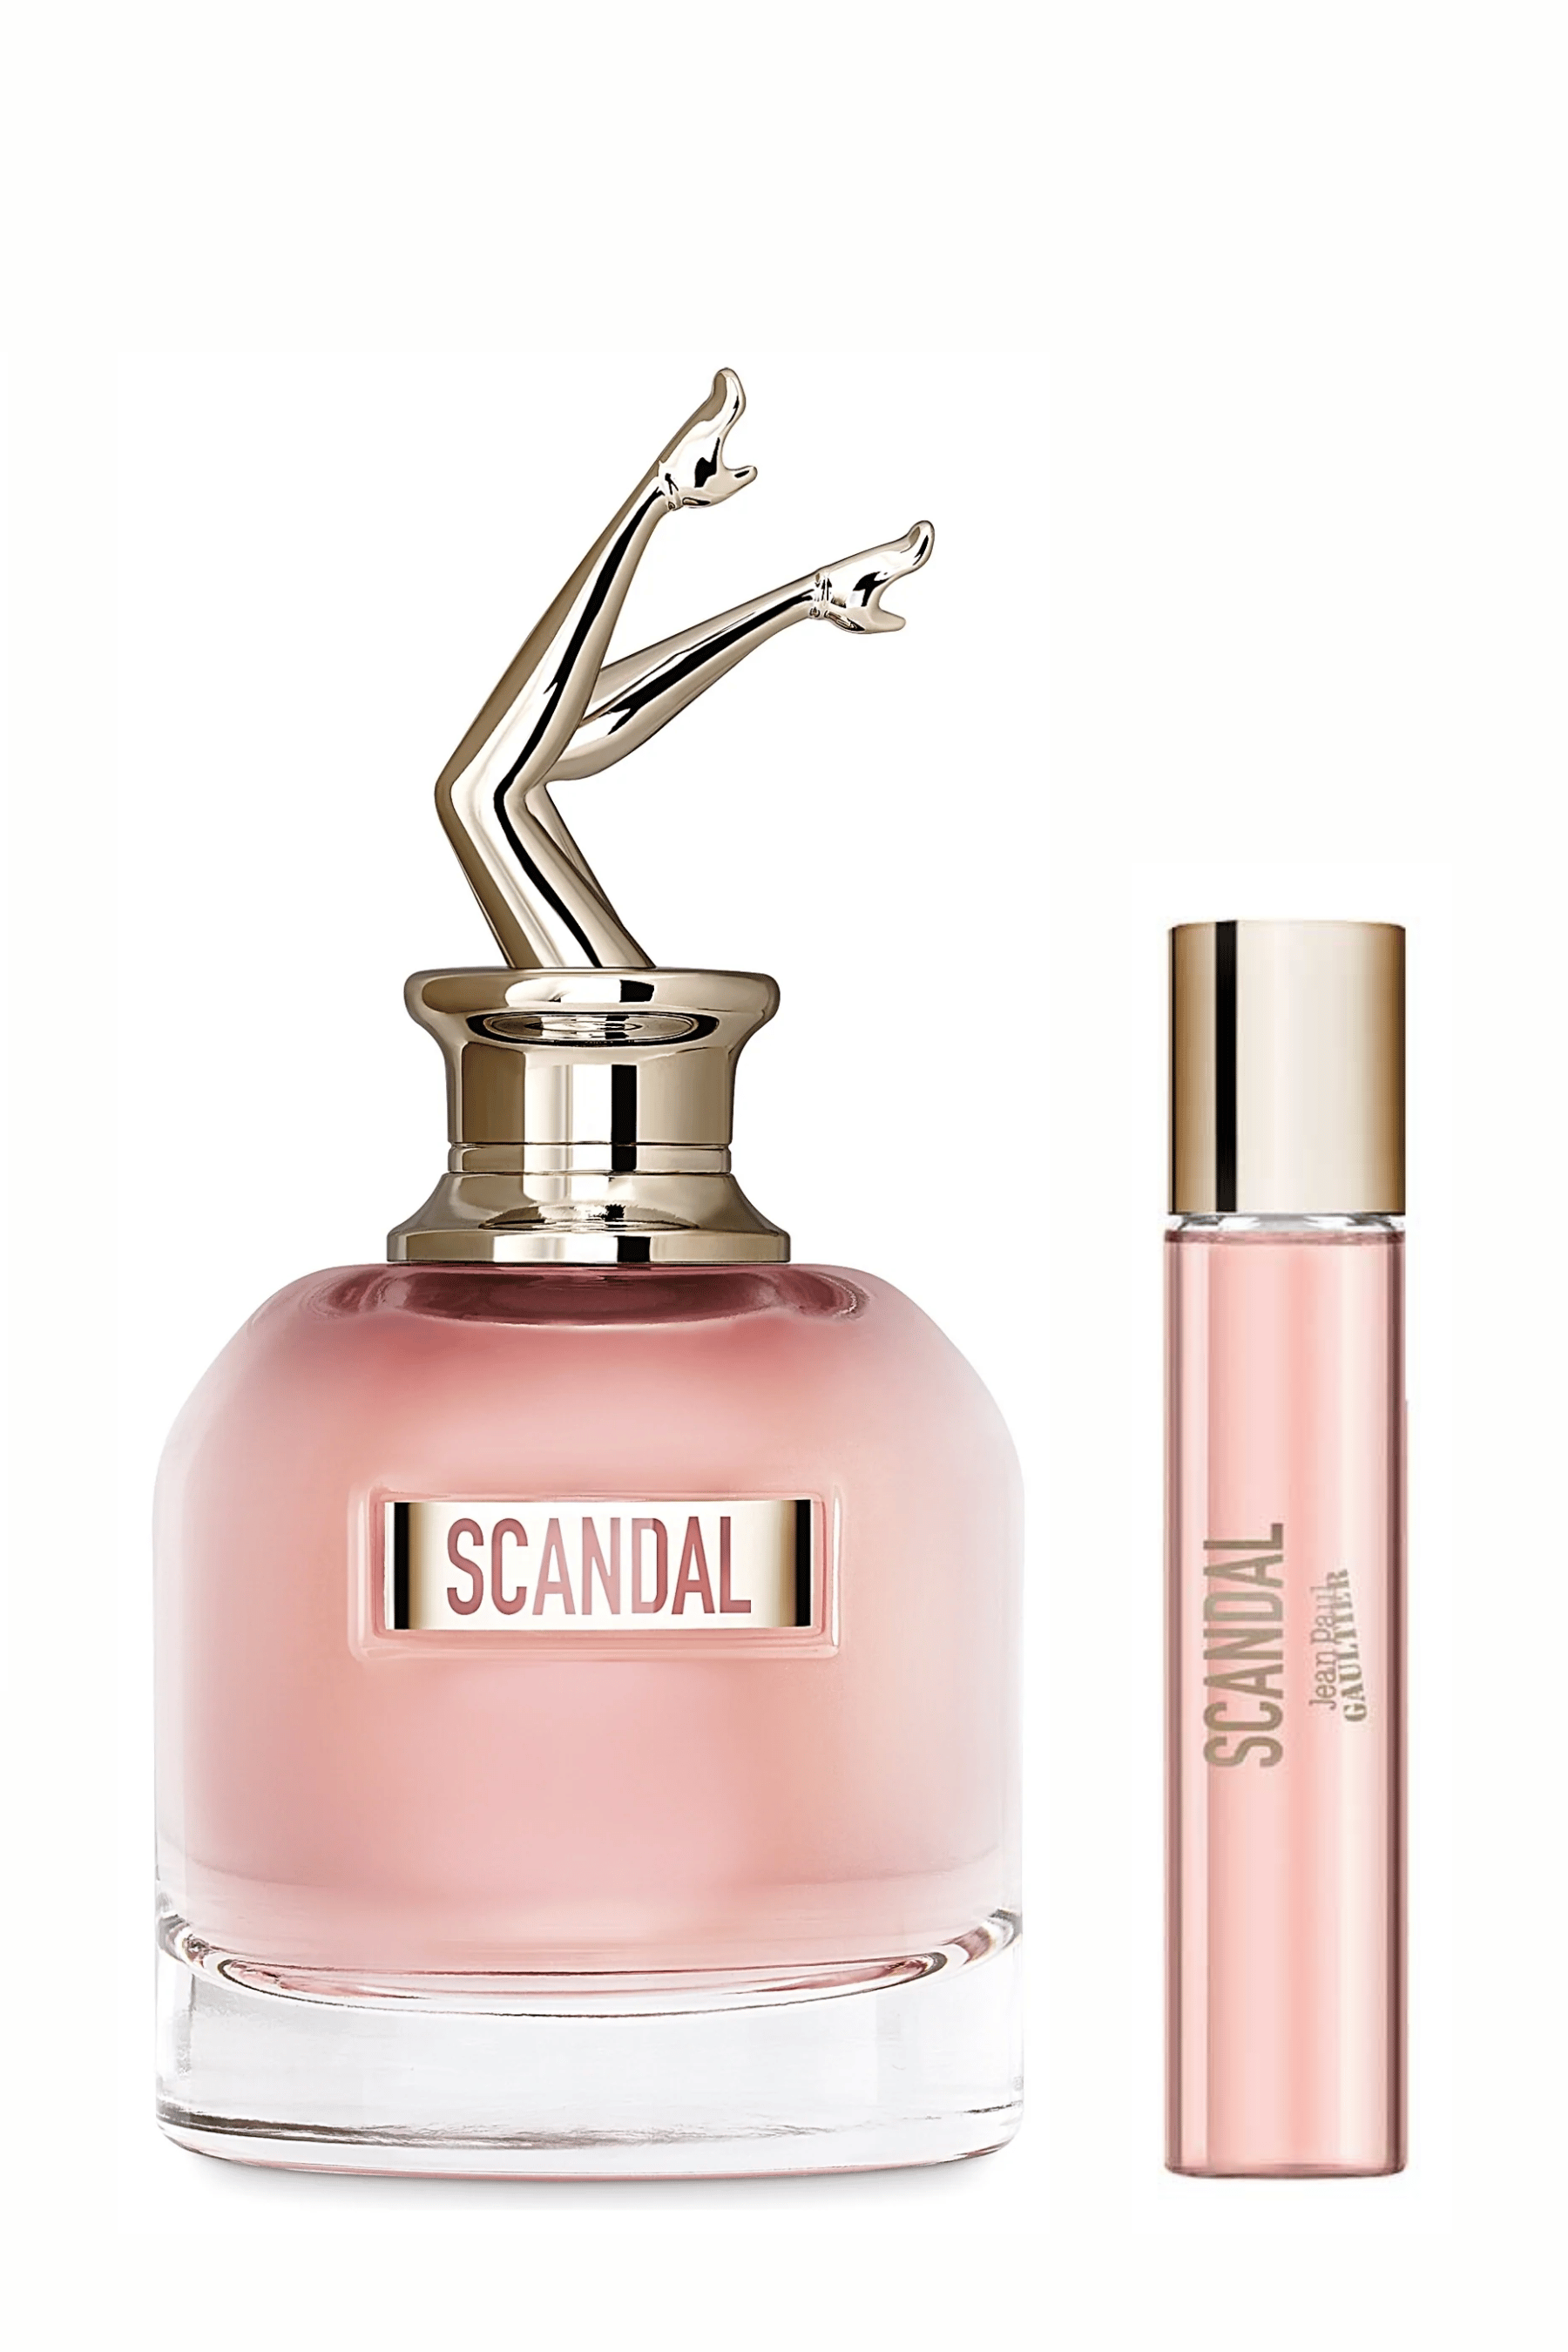 Jean Paul Gaultier Women's Scandal Eau de Parfum Spray - 2.7 oz bottle